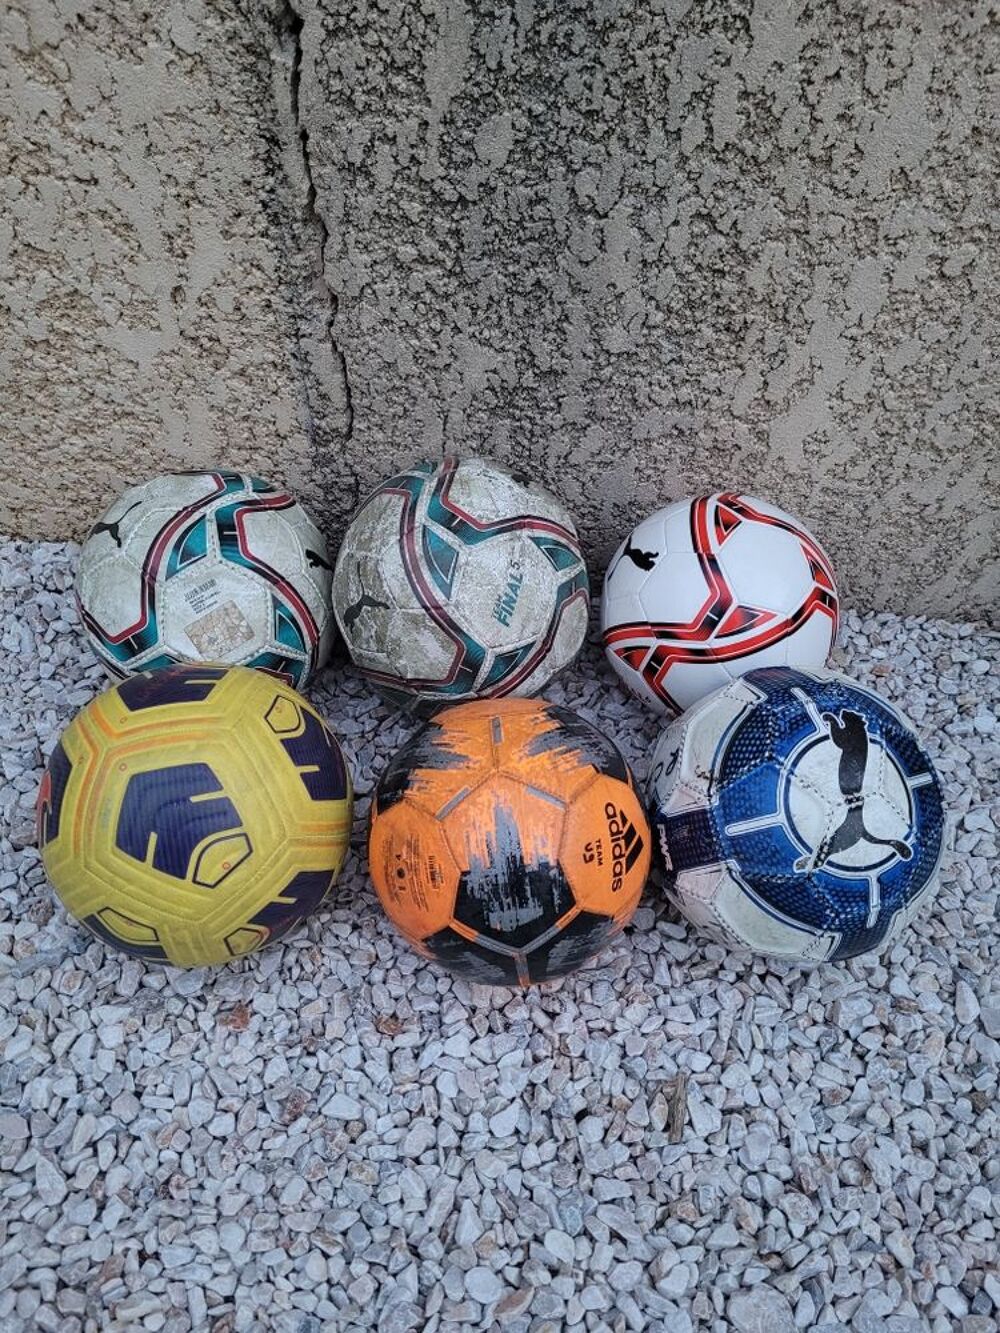 Ballons de football - PUMA, ADDIDAS, NIKE (A r&eacute;cup&eacute;rer sur place. Les 6 ballons. Pas de n&eacute;gociation) Sports